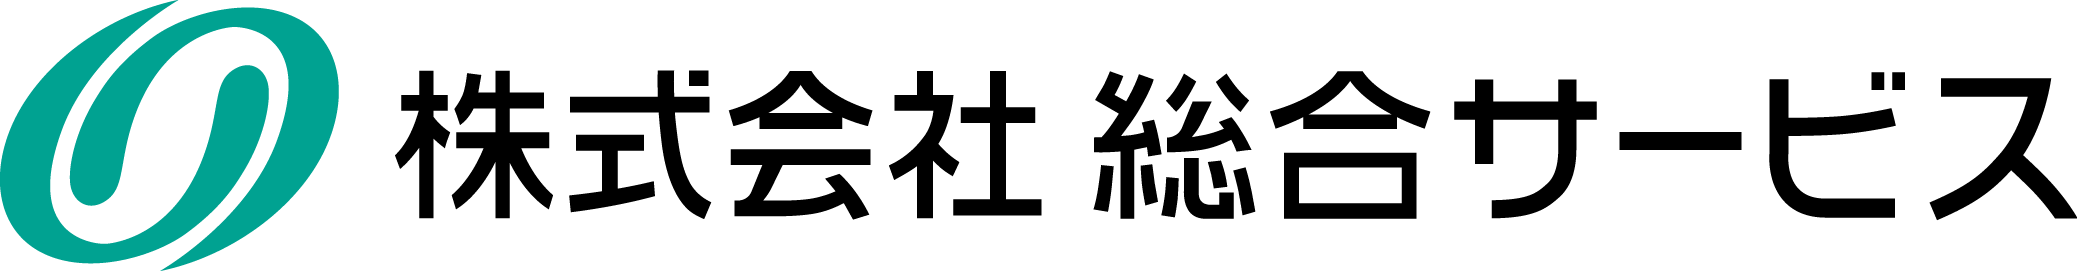 株式会社総合サービスロゴ